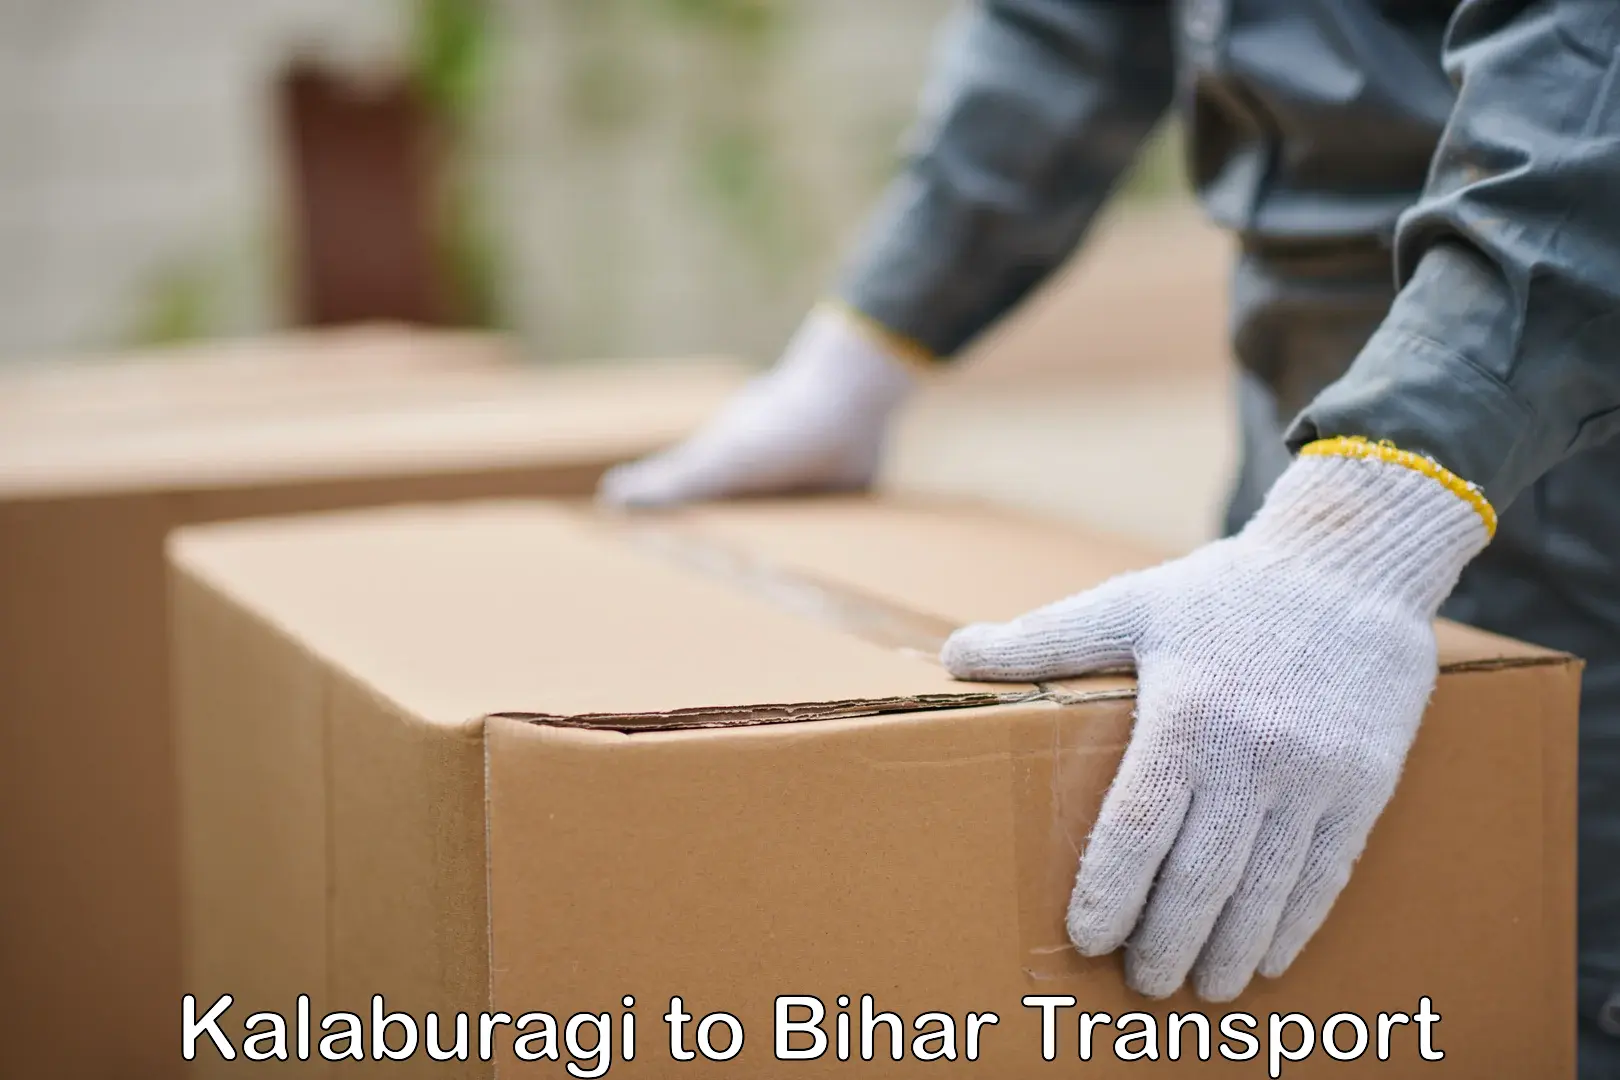 Container transportation services Kalaburagi to Bihar